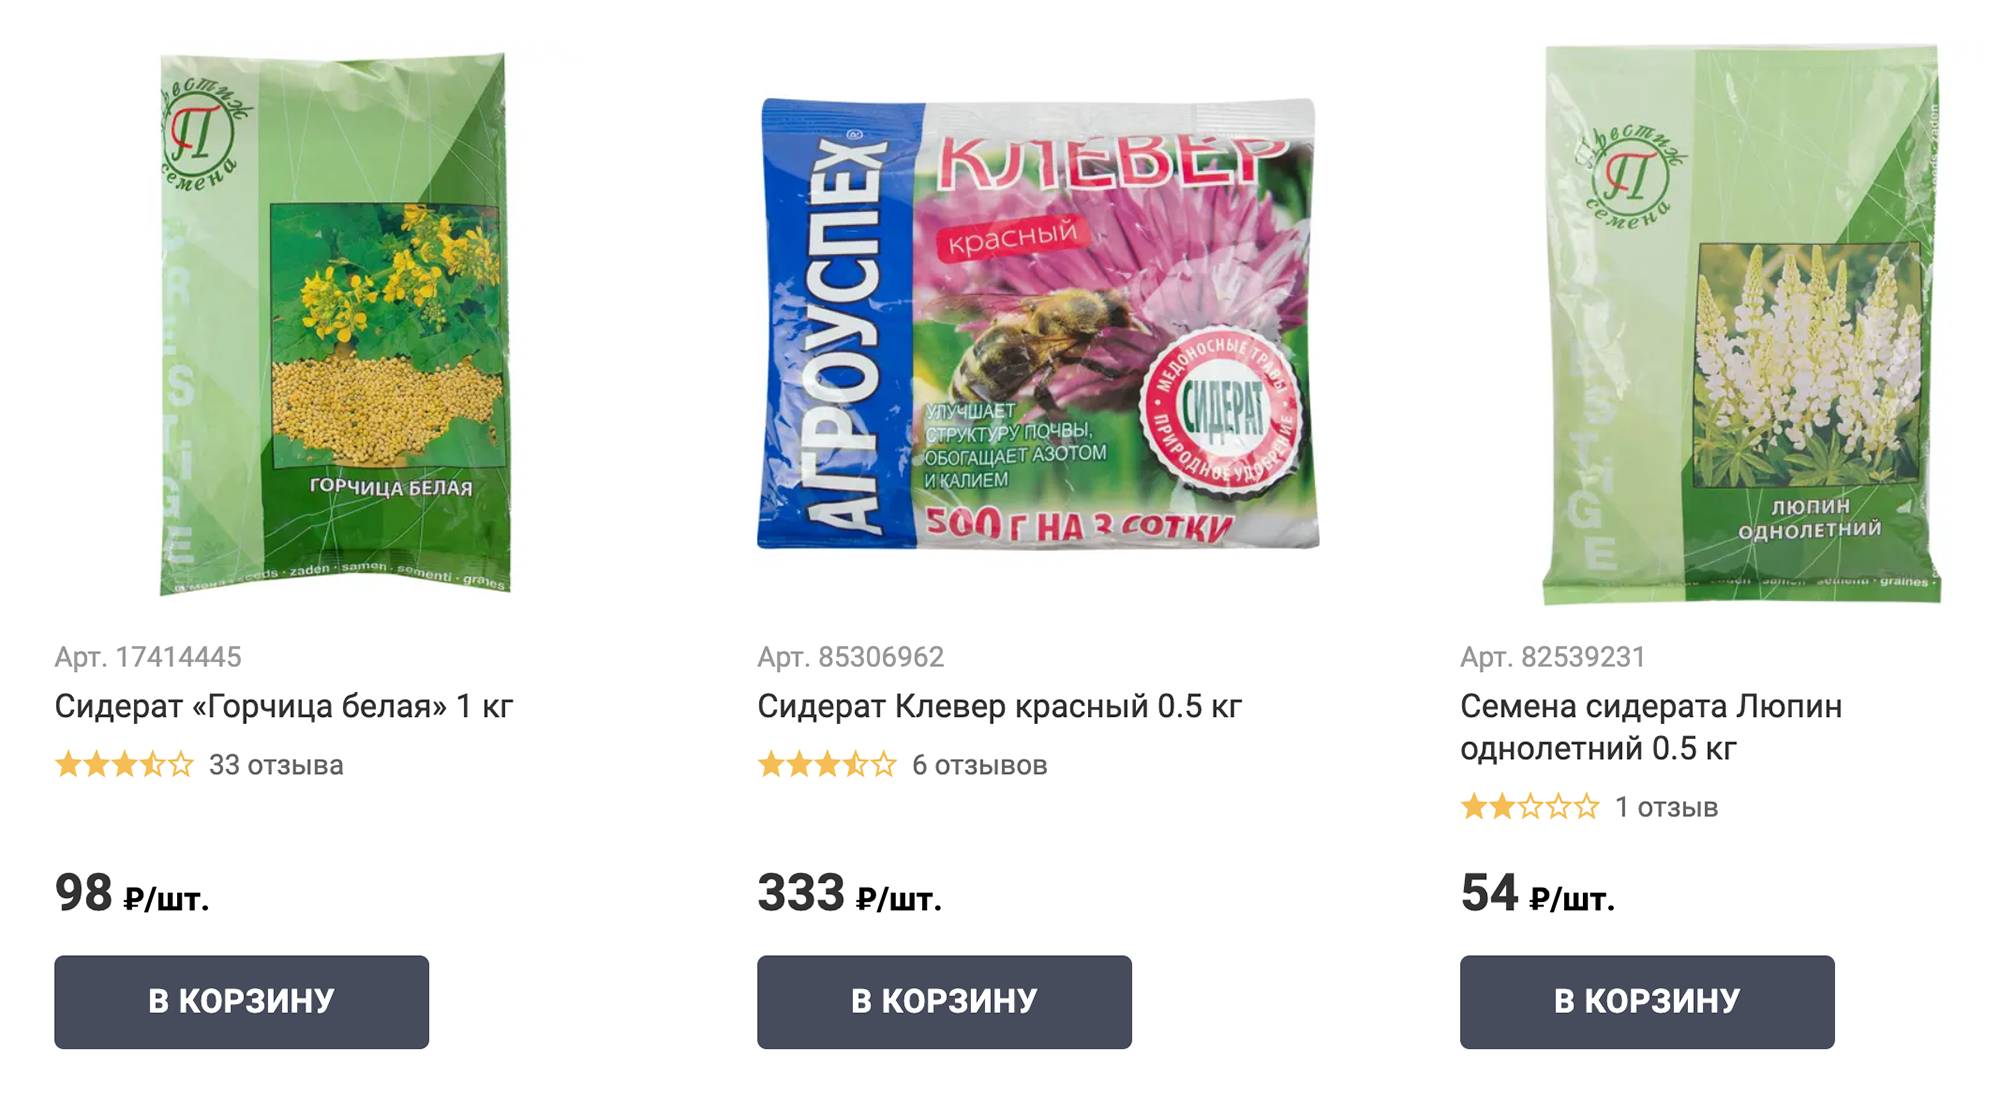 В интернет-магазине продают смеси сидератов, их спектр действия шире, чем одного вида. Цена — от 100 до 700 ₽ за килограммовый пакет. Источник: leroymerlin.ru